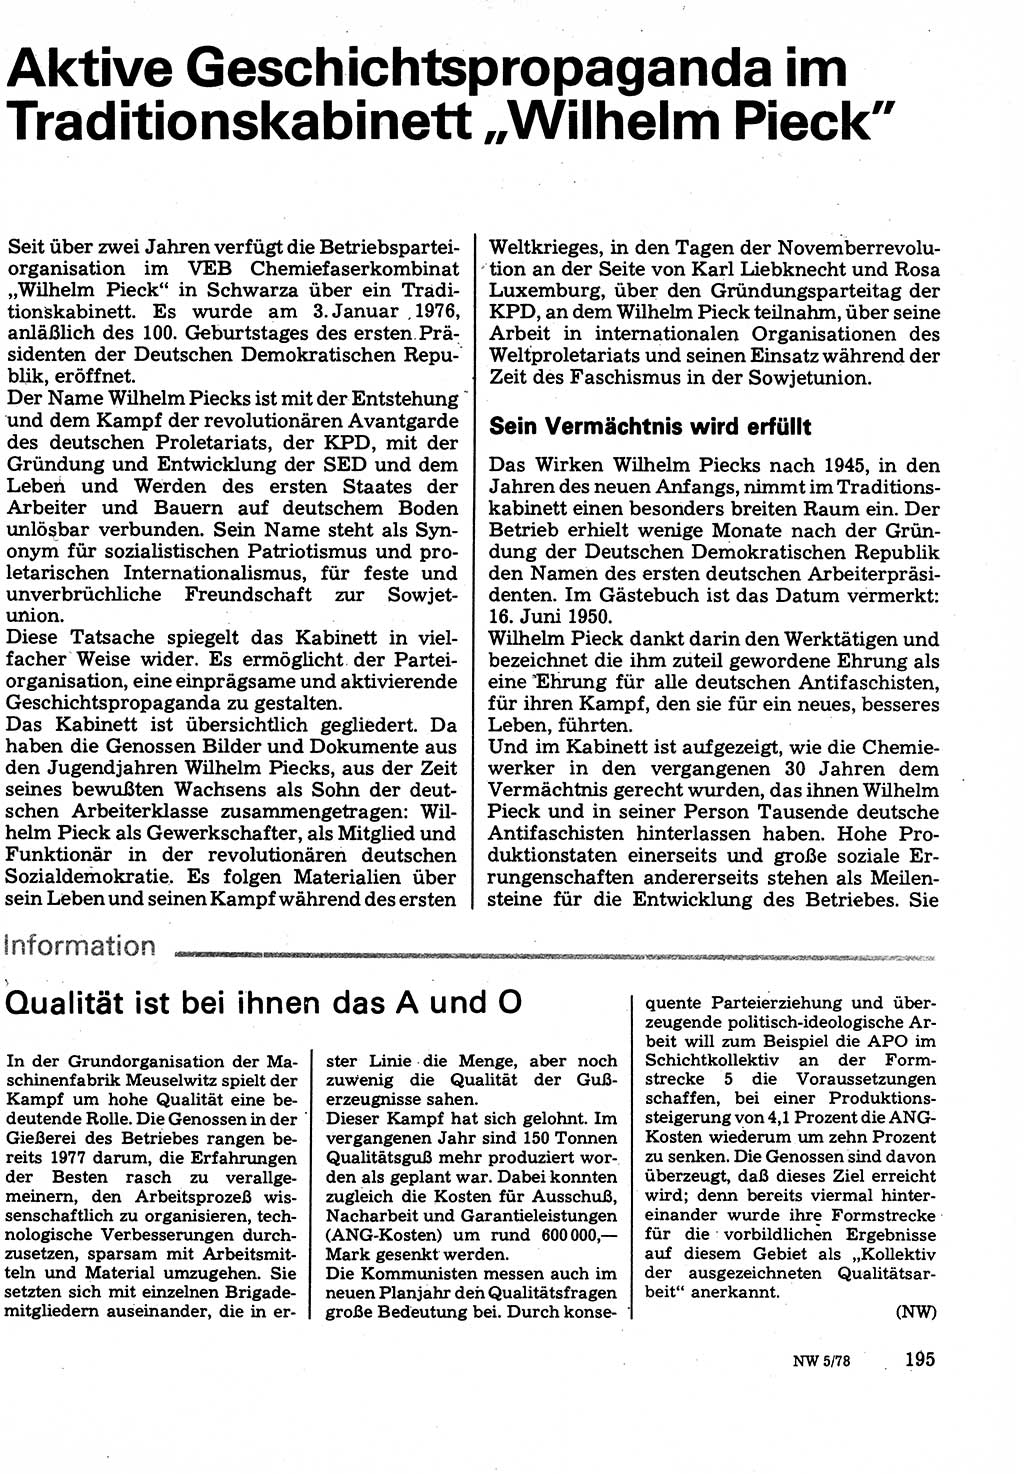 Neuer Weg (NW), Organ des Zentralkomitees (ZK) der SED (Sozialistische Einheitspartei Deutschlands) für Fragen des Parteilebens, 33. Jahrgang [Deutsche Demokratische Republik (DDR)] 1978, Seite 195 (NW ZK SED DDR 1978, S. 195)